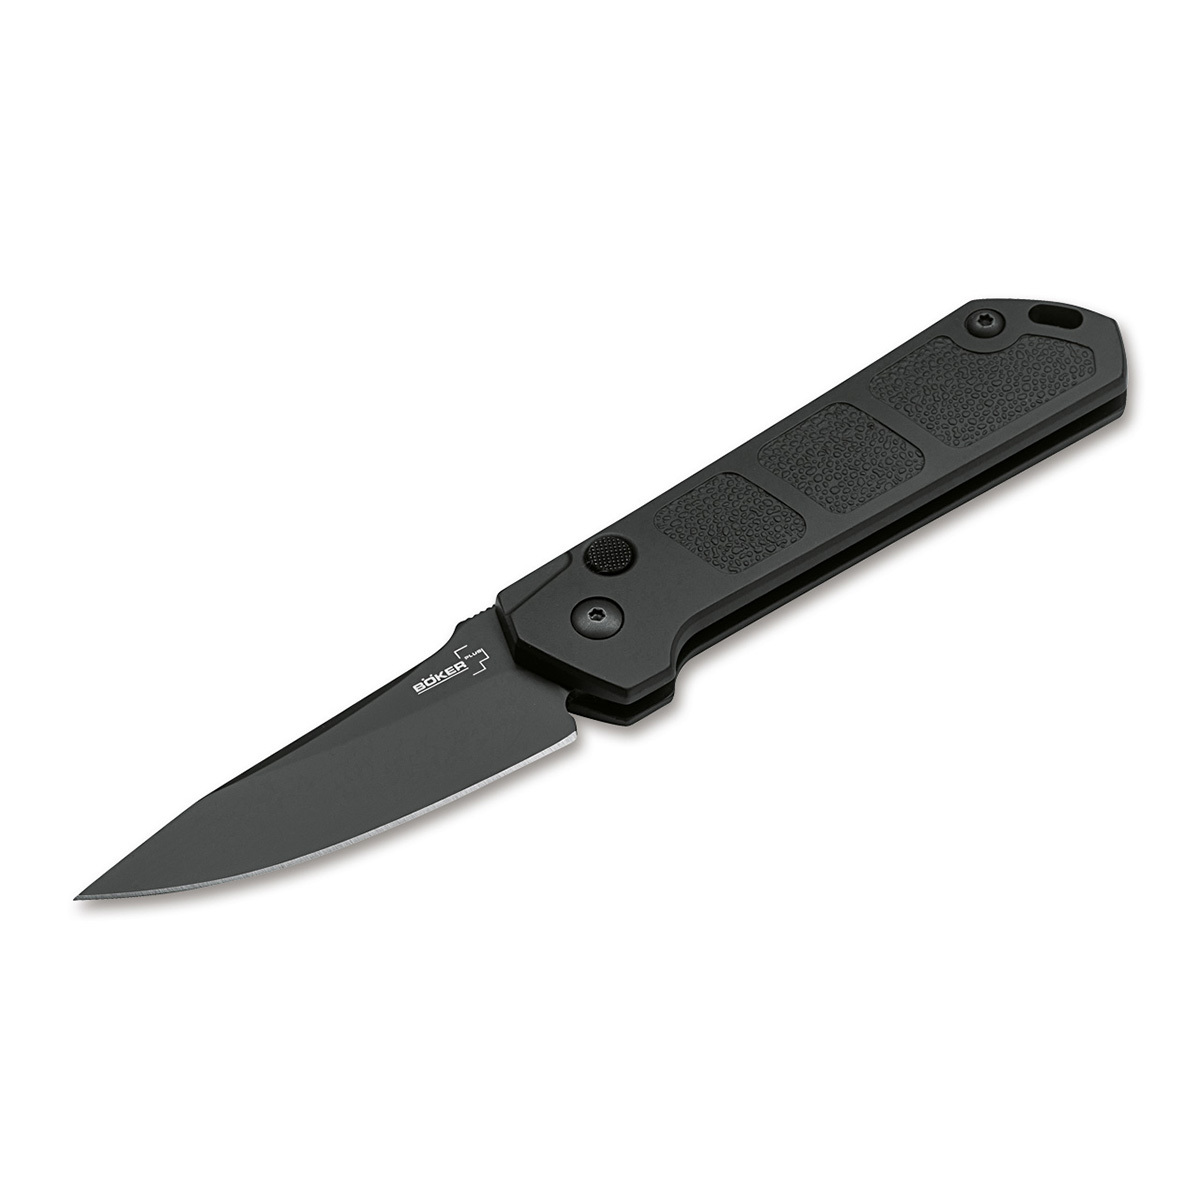 Нож автоматический складной Boker Kihon auto black, сталь AUS8, рукоять алюминий складной автоматический нож mirage